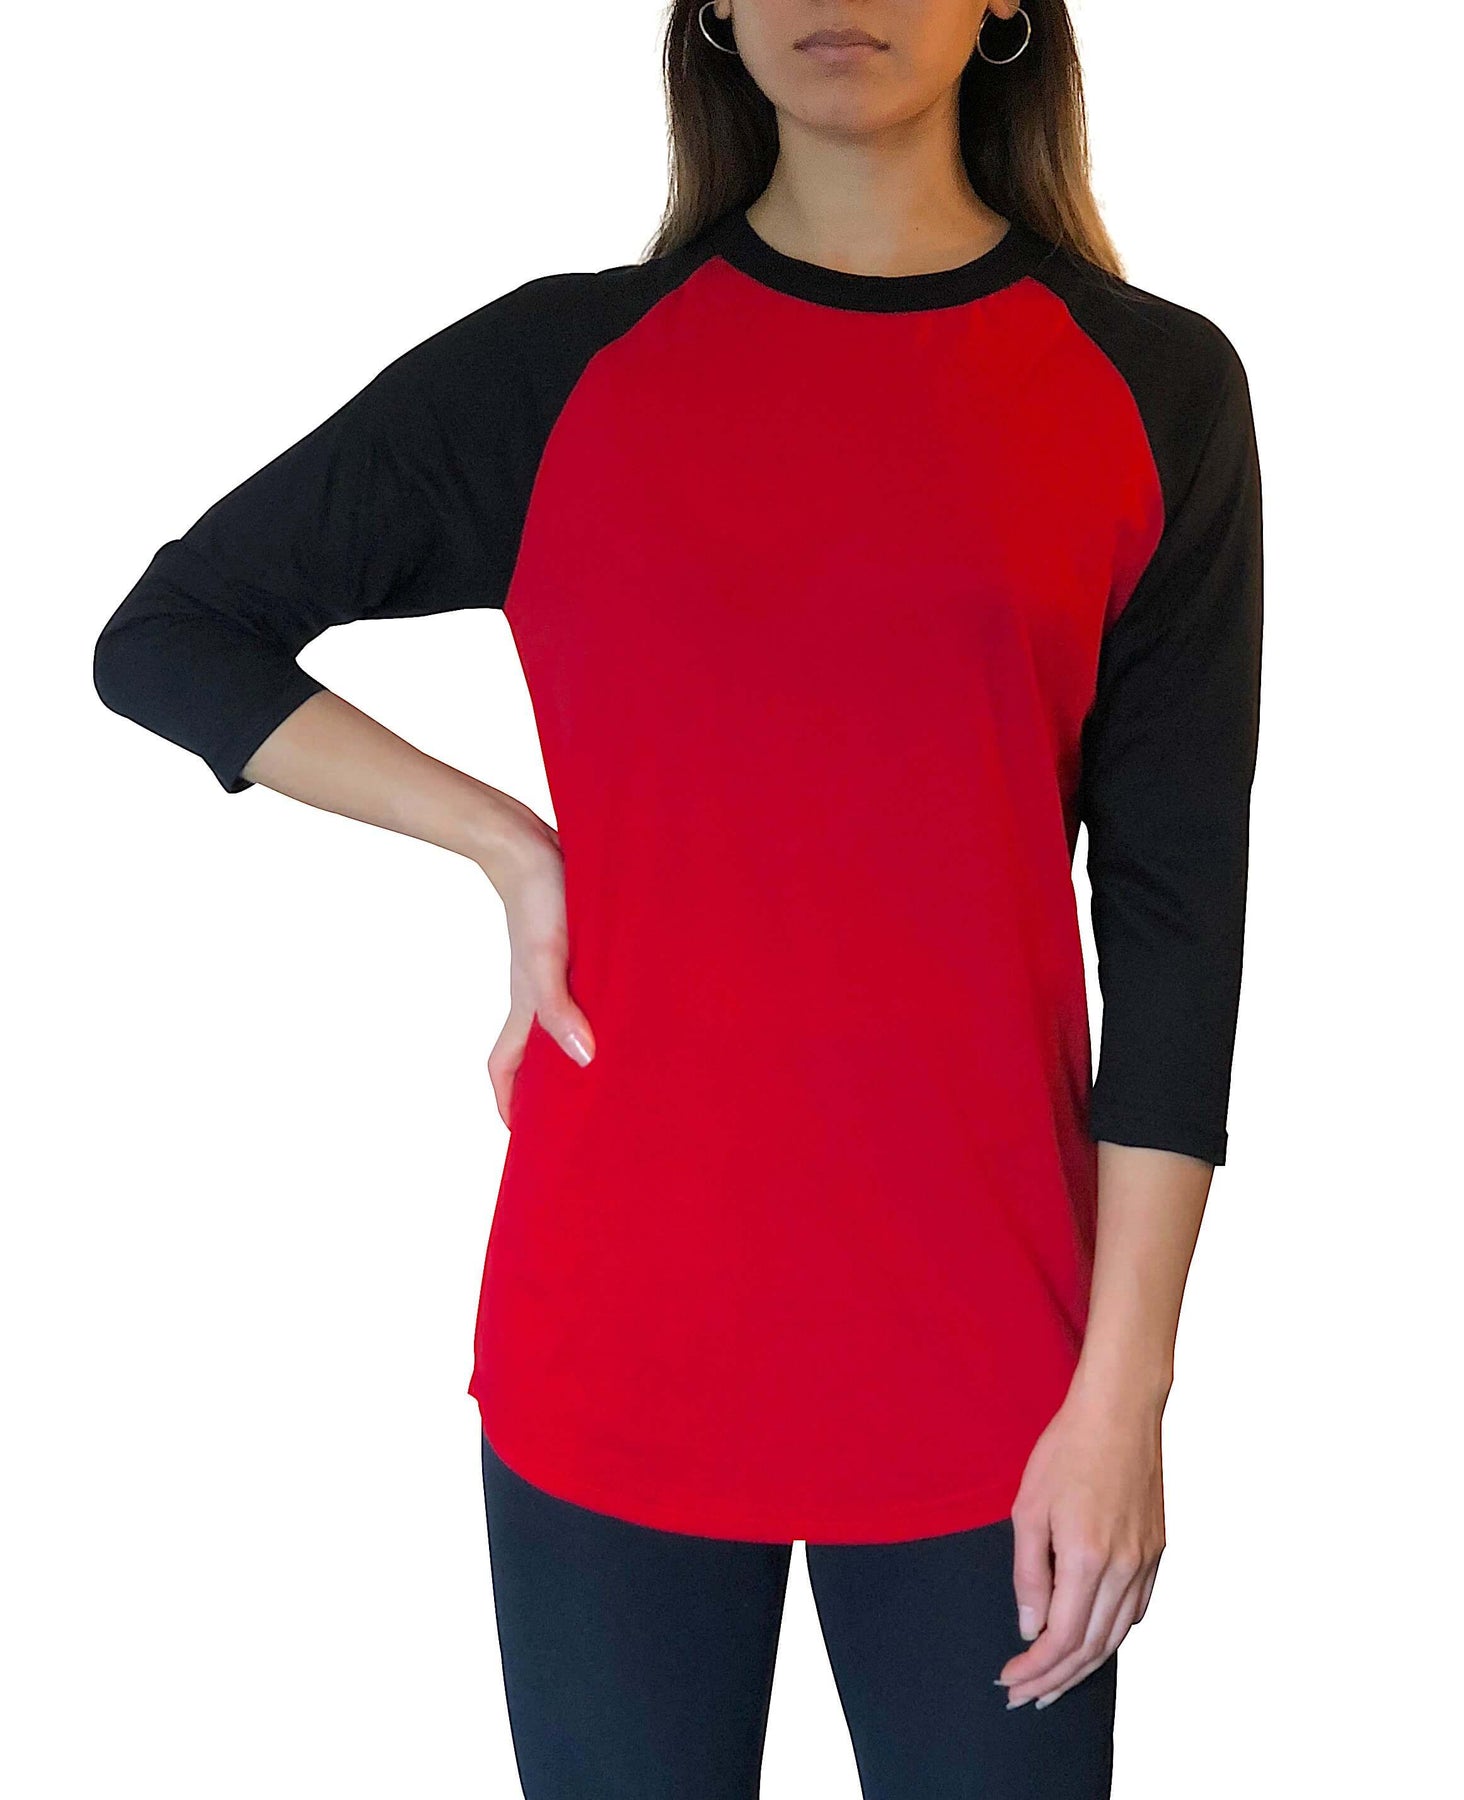 Adult Plain Raglan 3 4 T Shirt Red Black – Iltex Apparel